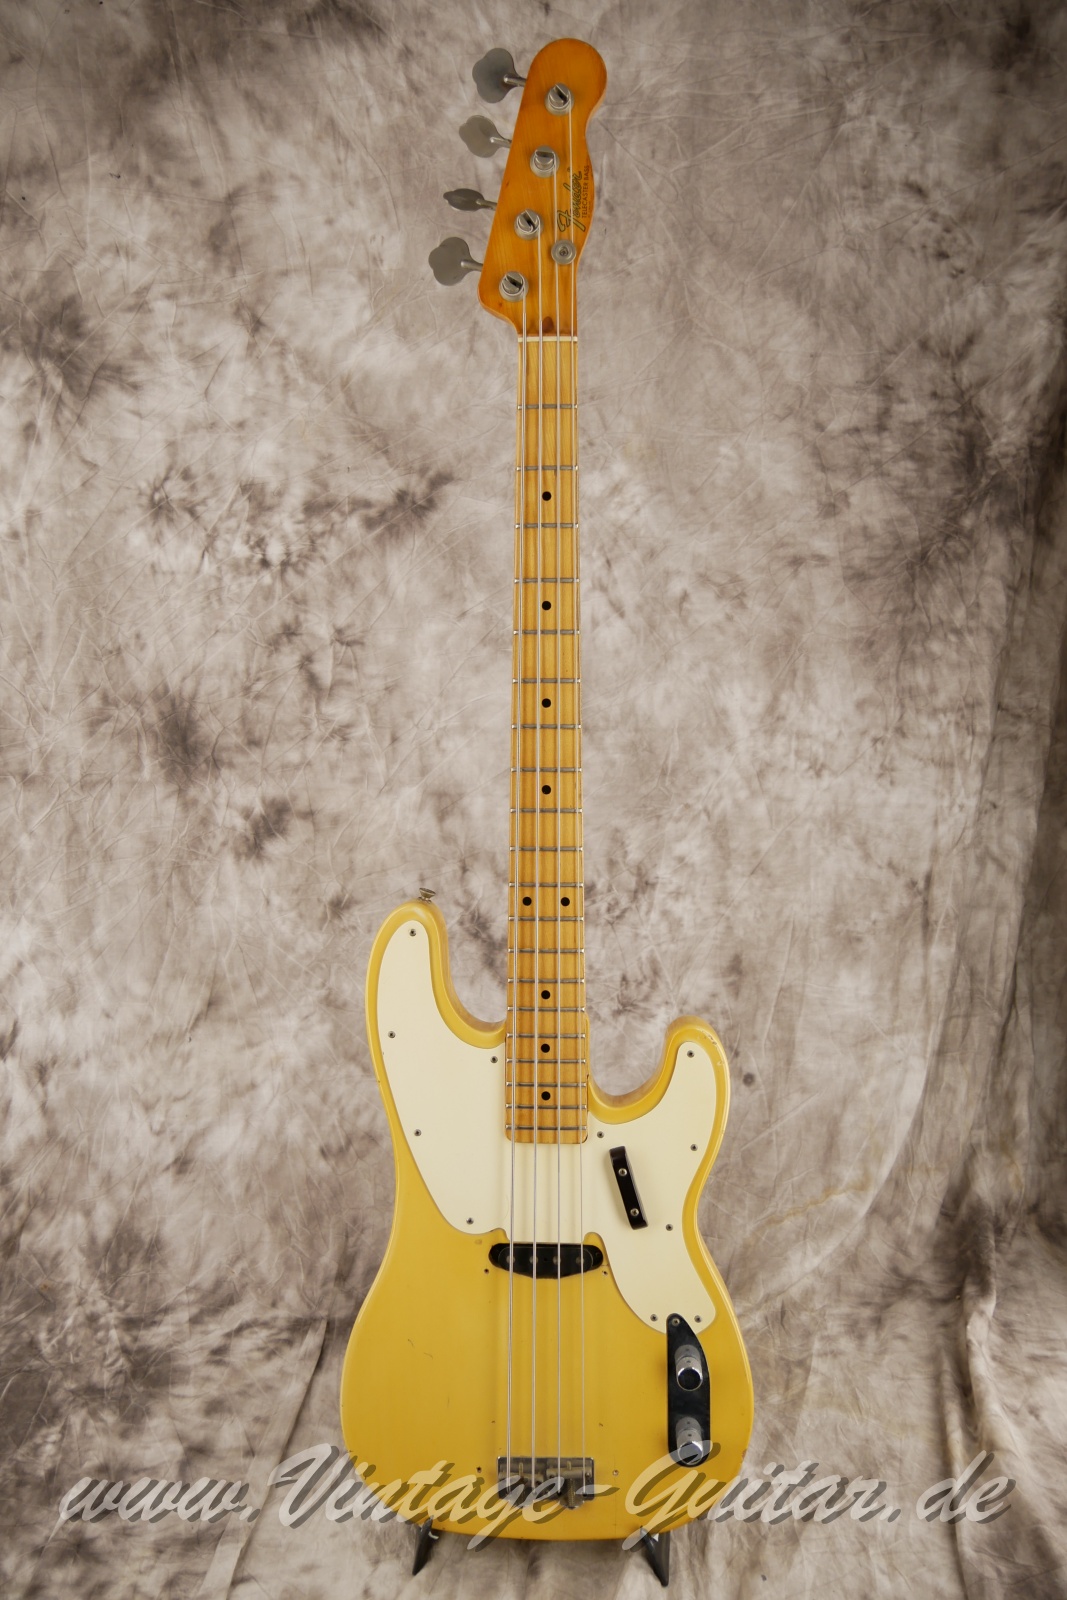 Fender_telecaster_bass_blonde_baujahr_1970_USA-001.JPG